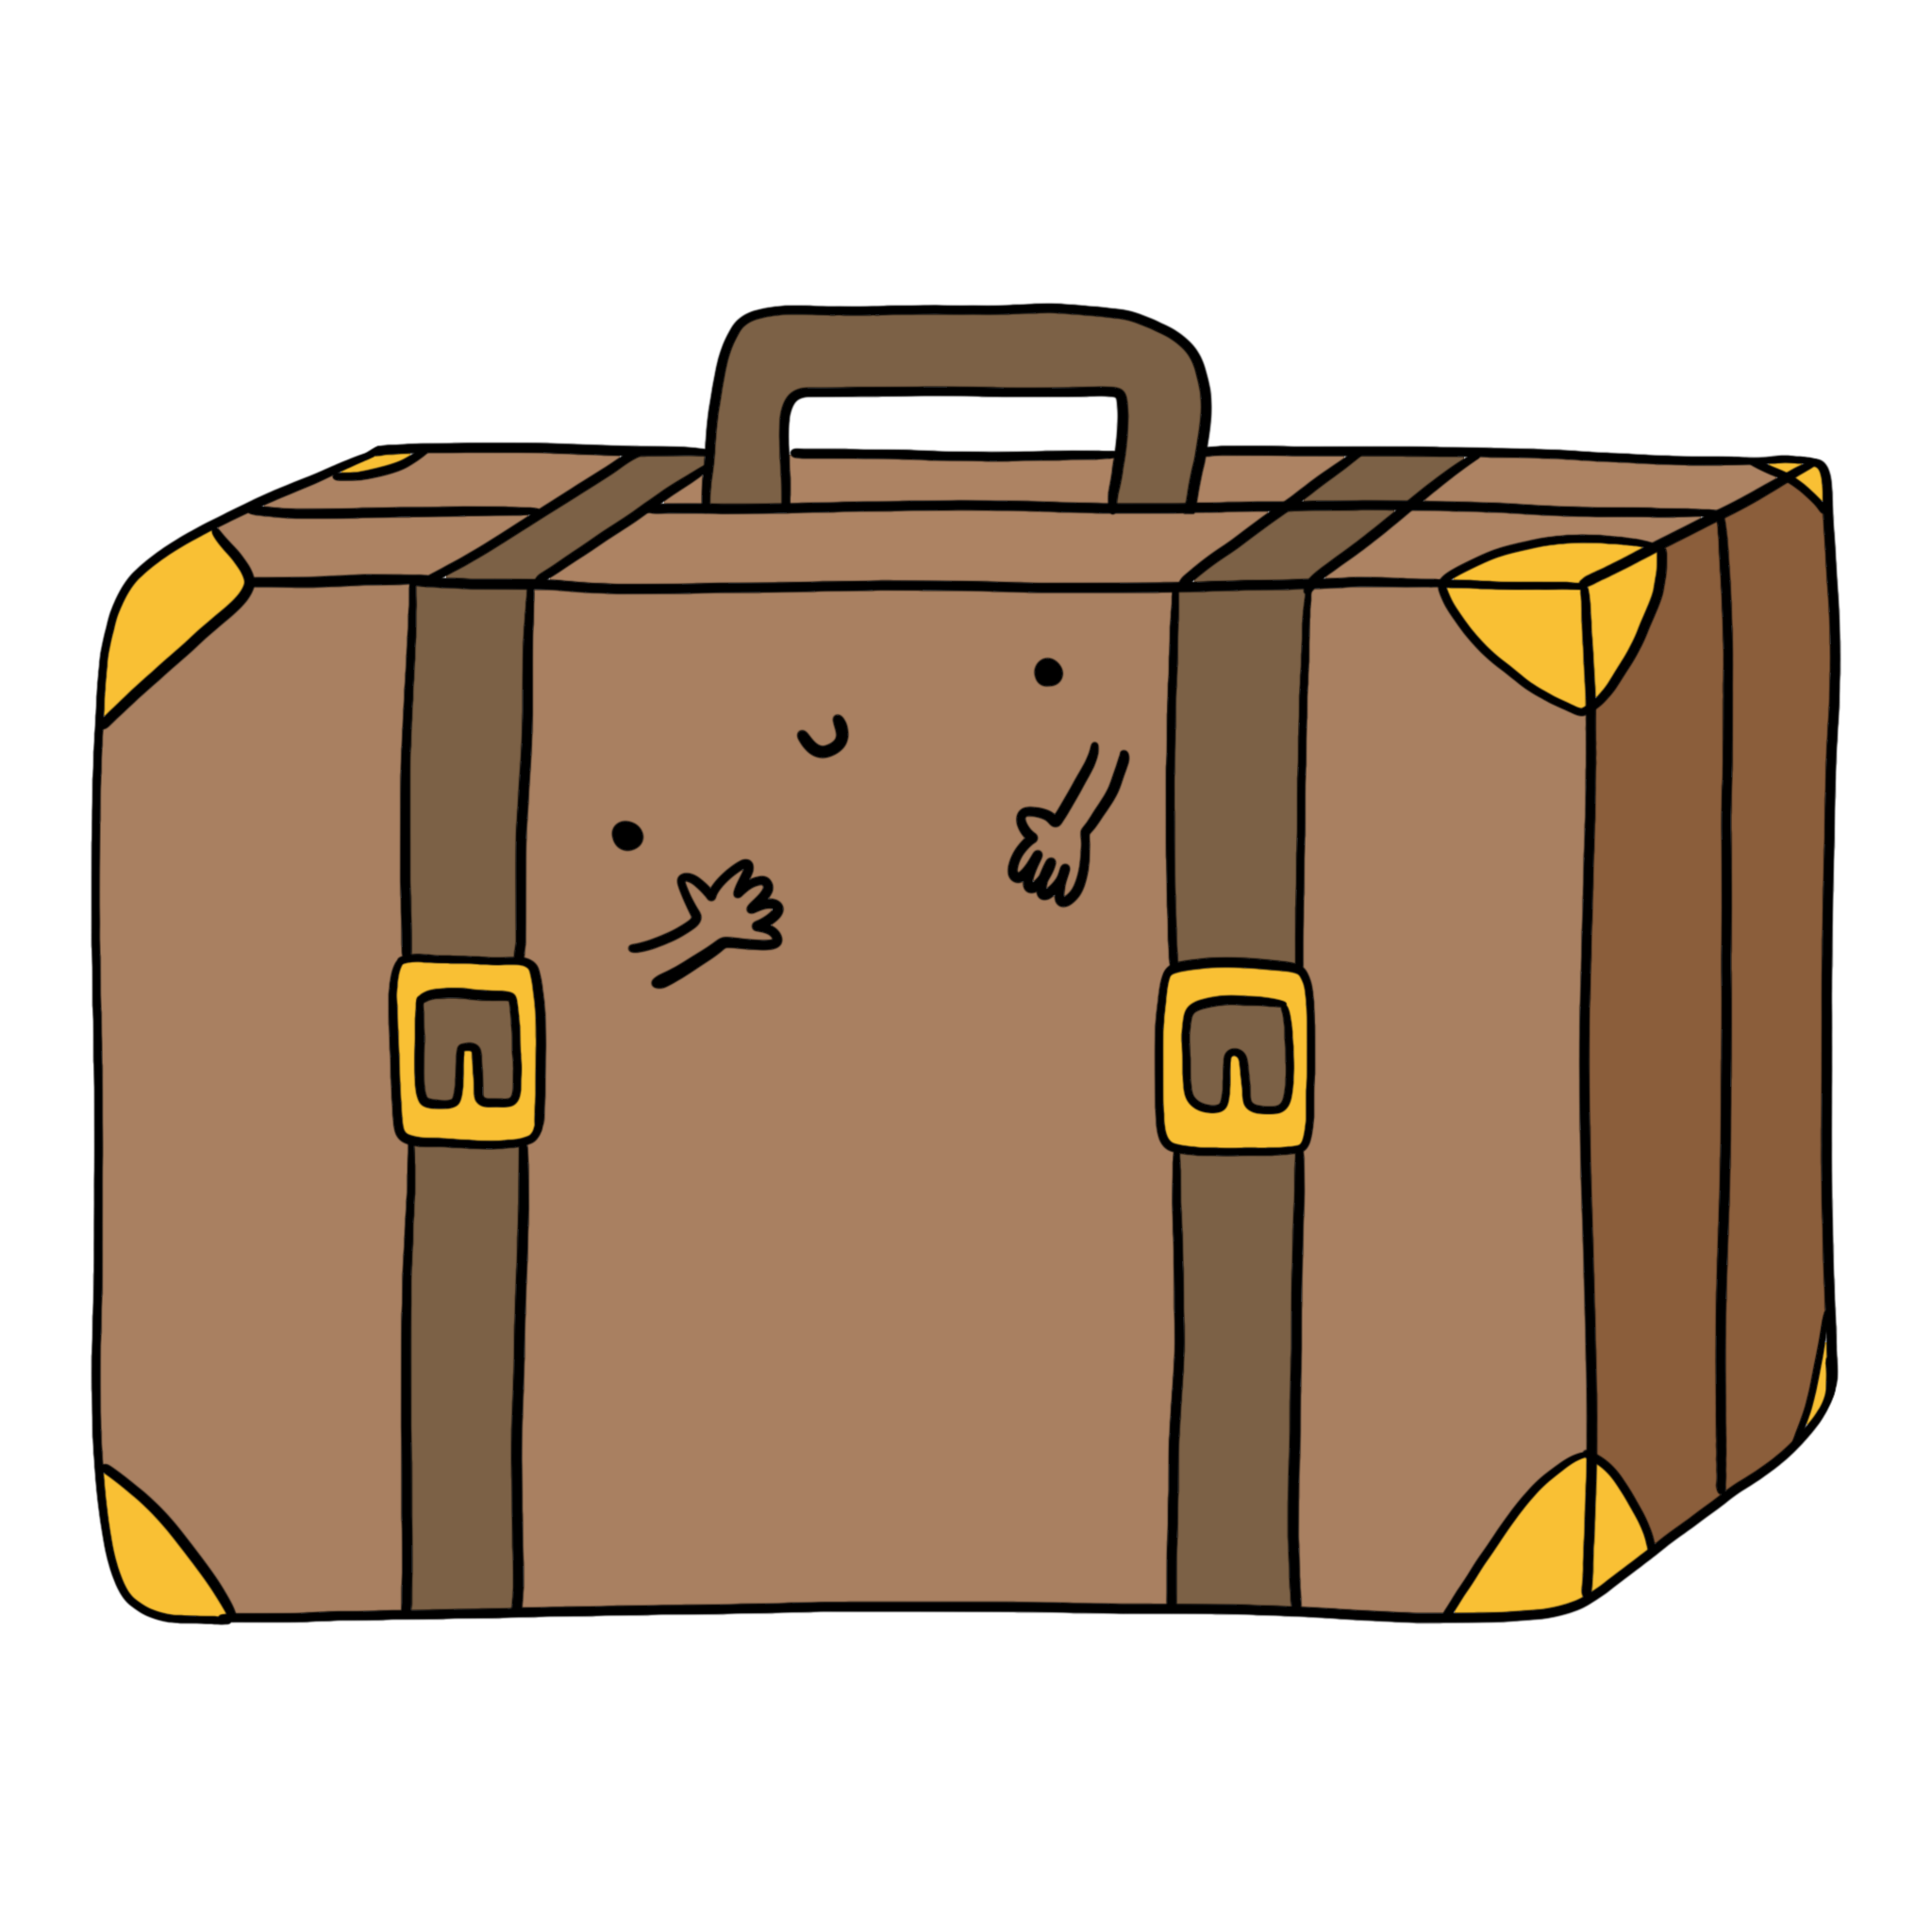 immagine valigia disegno valigia illustrazione a colori valigia